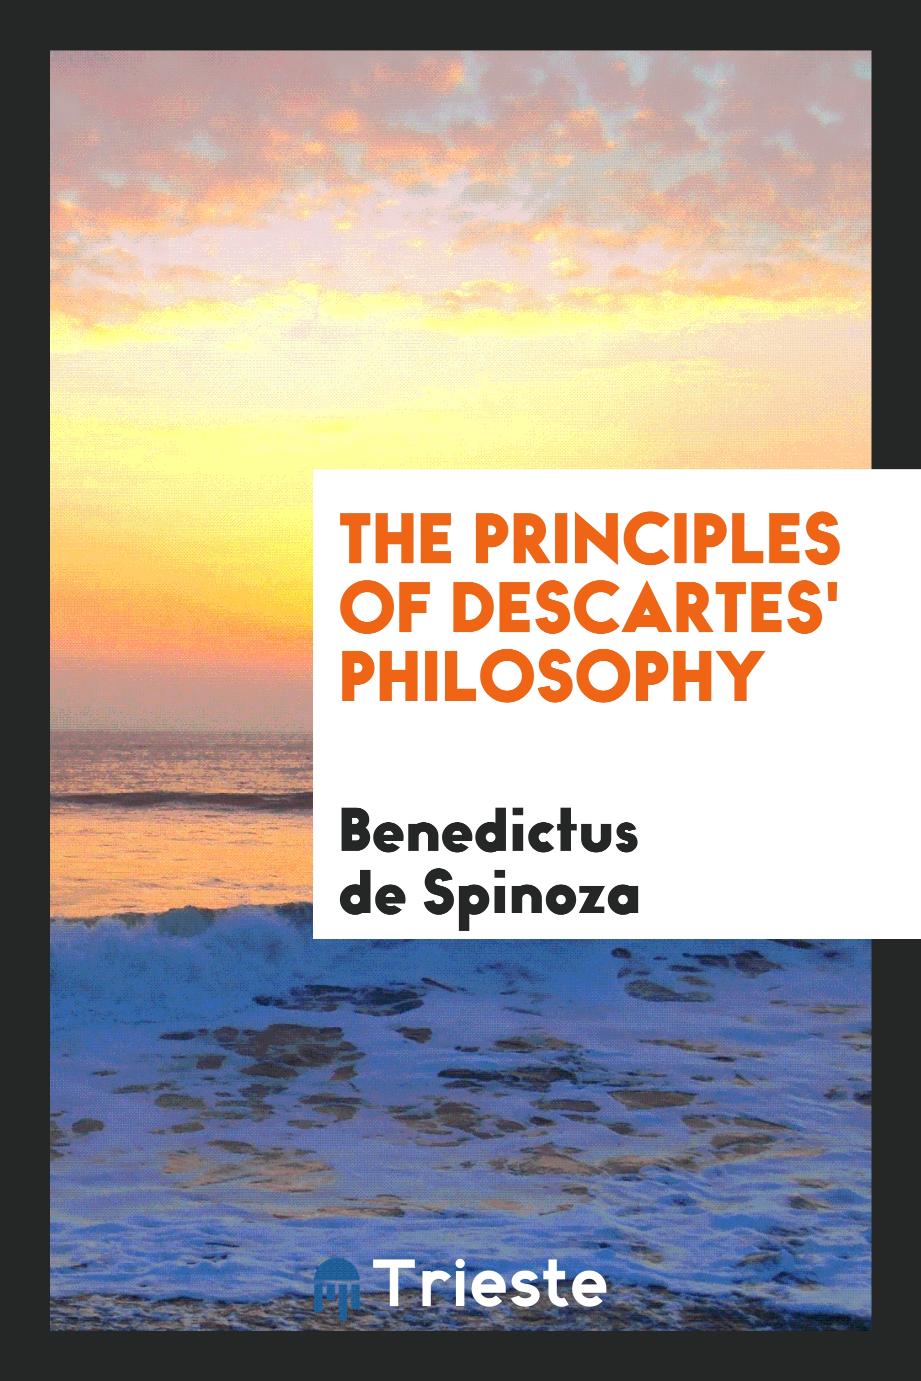 The principles of Descartes' philosophy